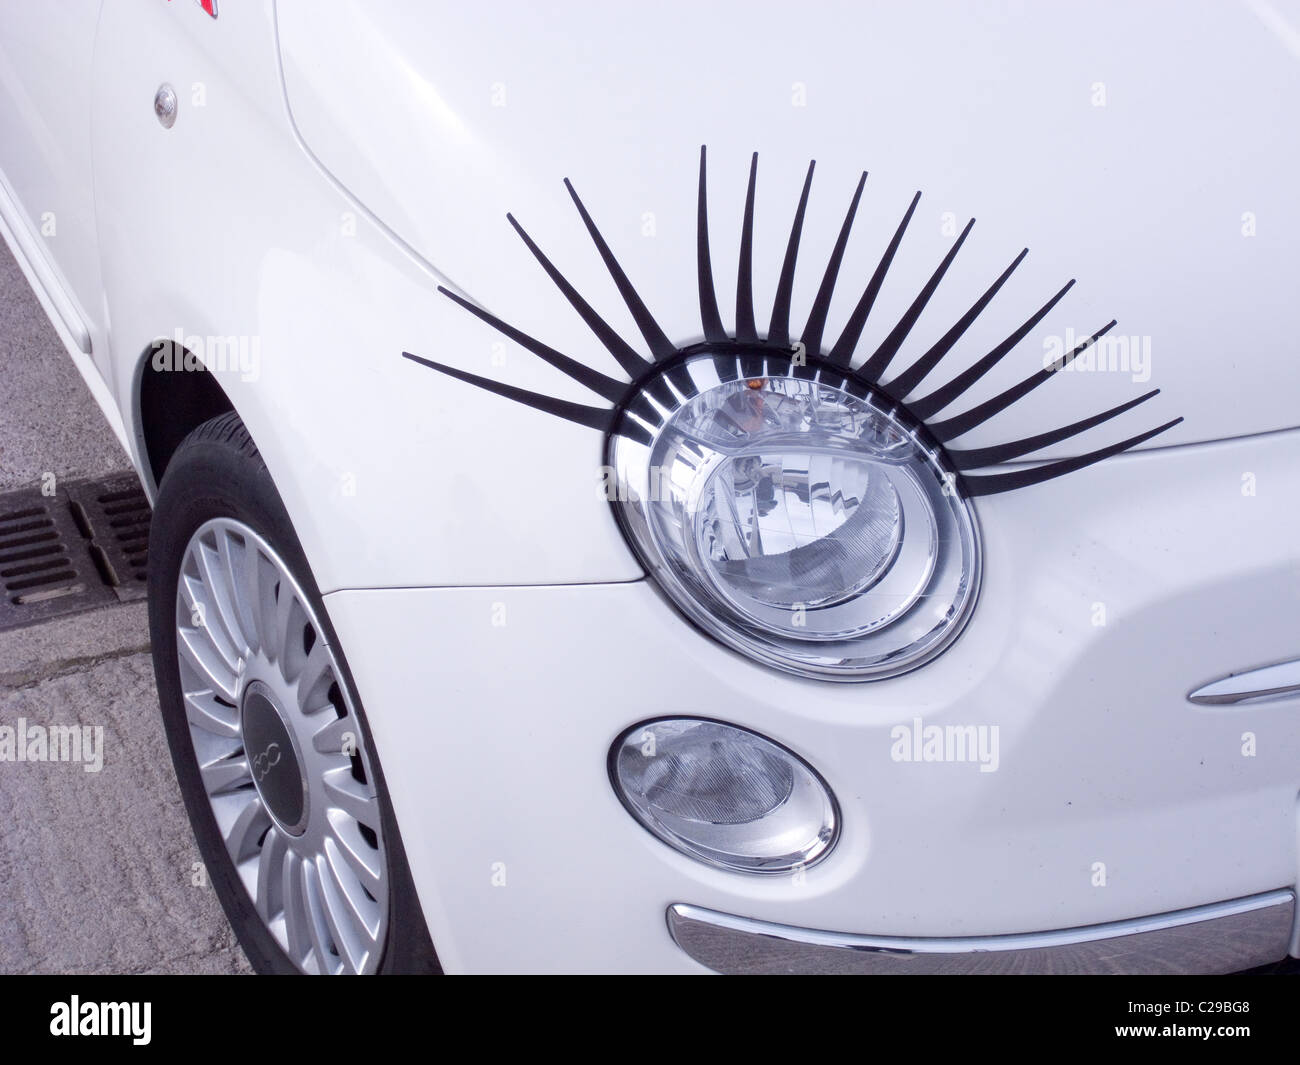 Scheinwerfer von einem weißen Fiat 500-Auto mit großen künstlichen  Augenbrauen ausgestattet Stockfotografie - Alamy